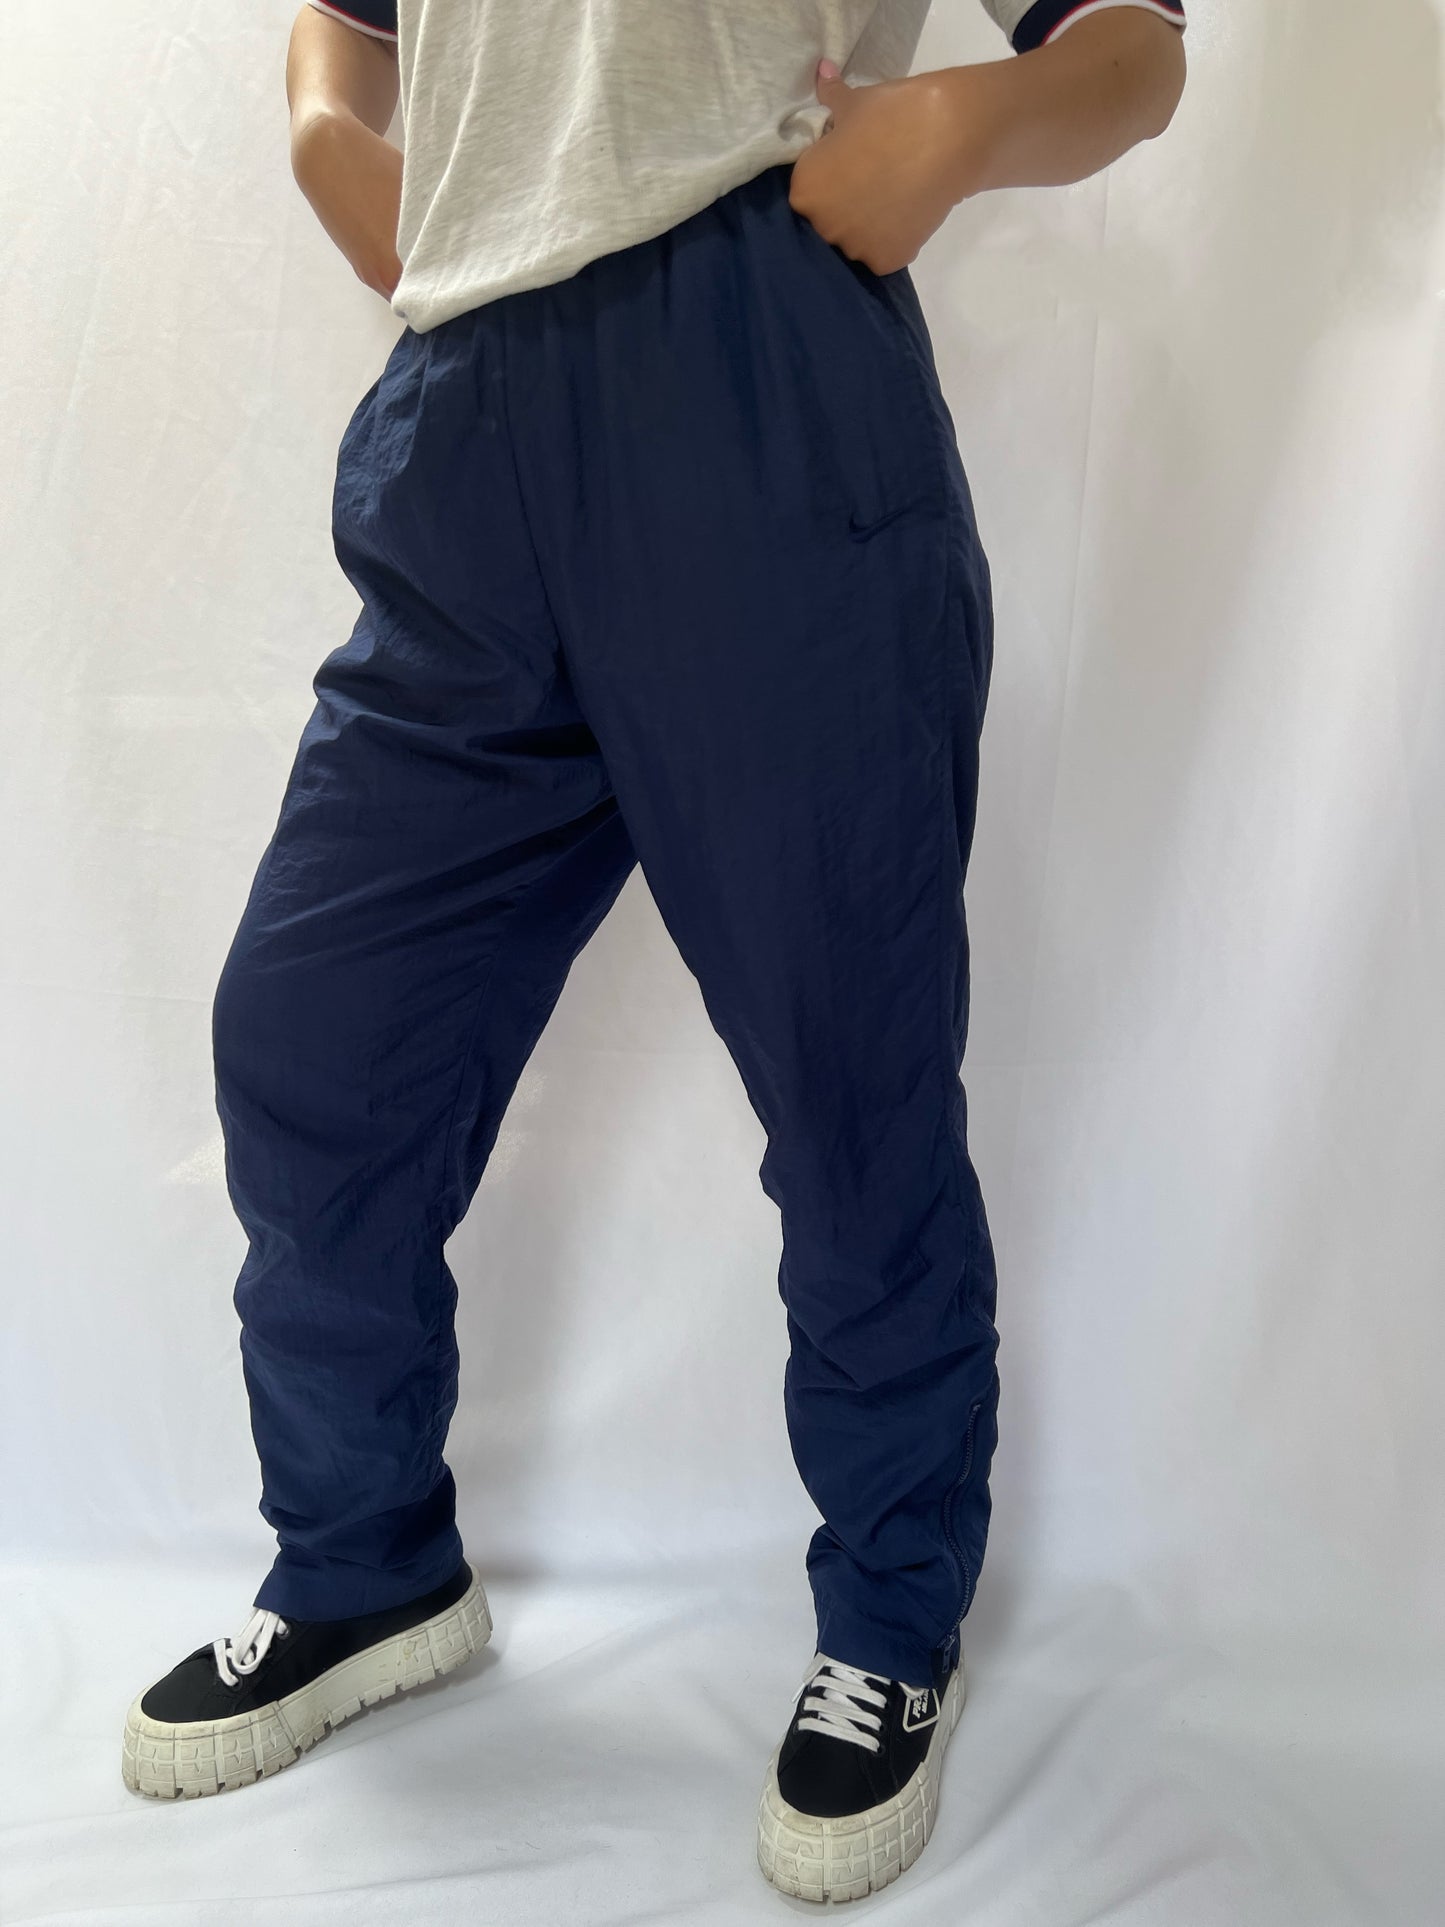 90's Nike Navy Nylon Pants - M